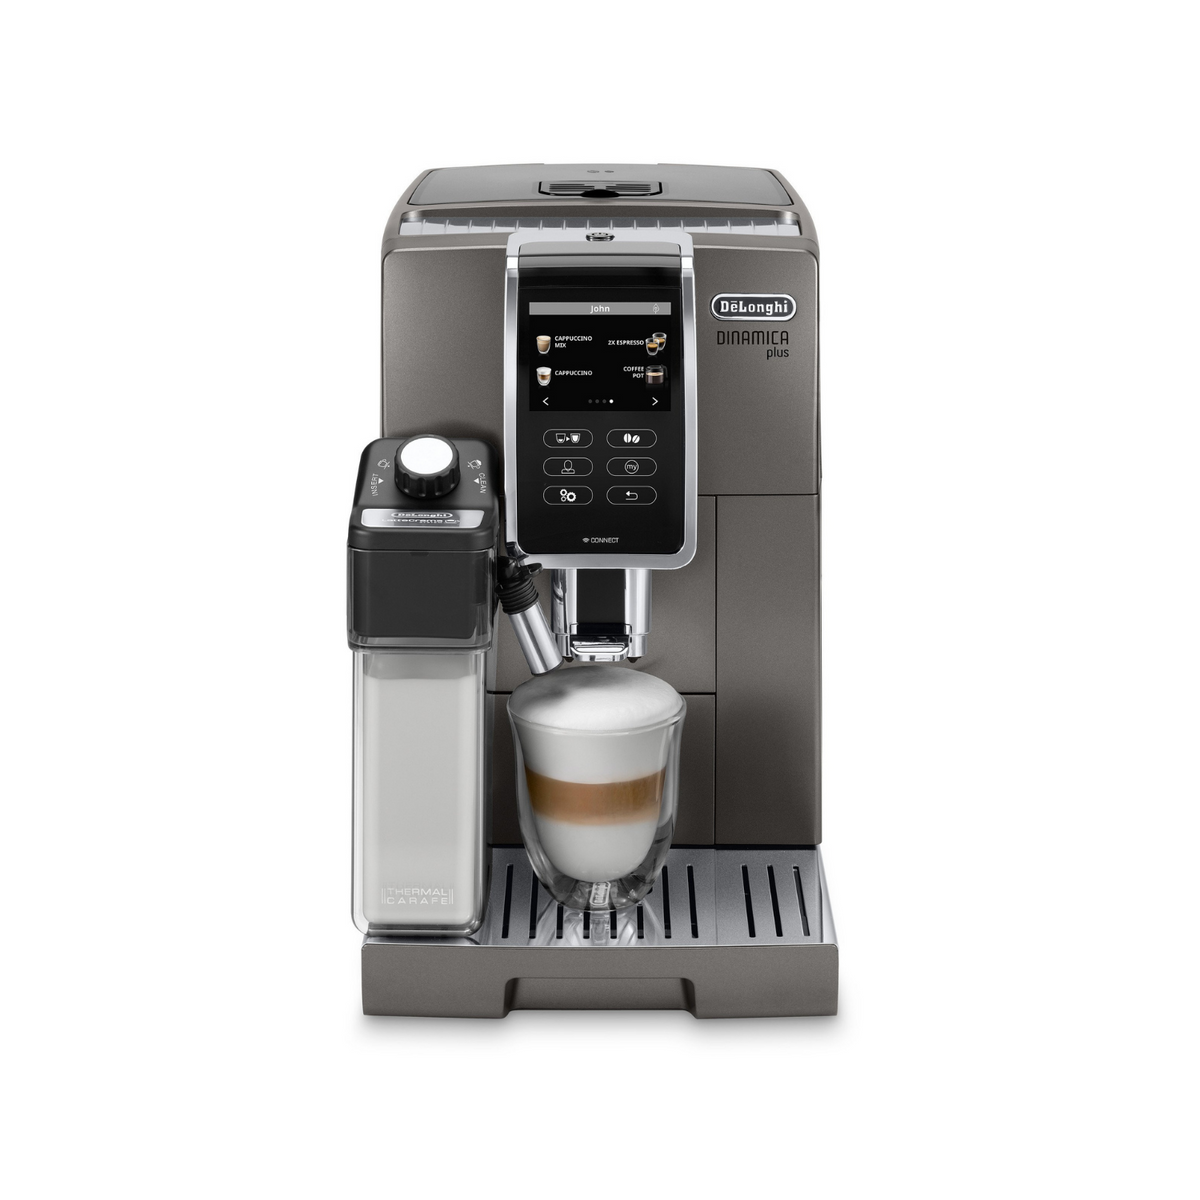 Delonghi - Dinamica FEB3515 / Espresso broyeur / Arlo's Coffee